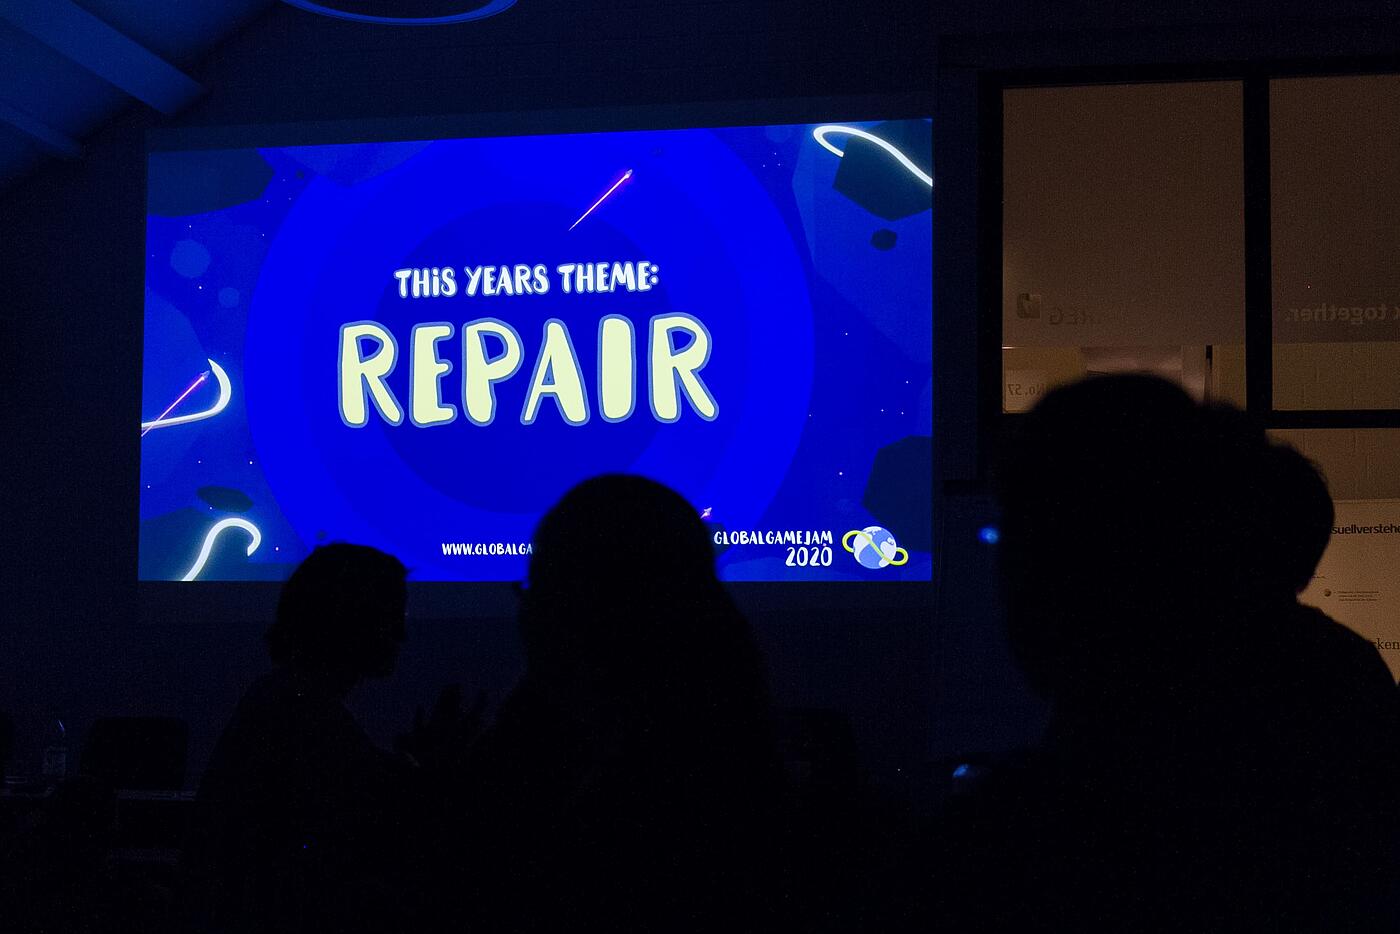 Auf dem Präsentationsbildschirm bei einer Konferenz steht auf blauem Hintergrund, dass das diesjährige Thema Repair ist.